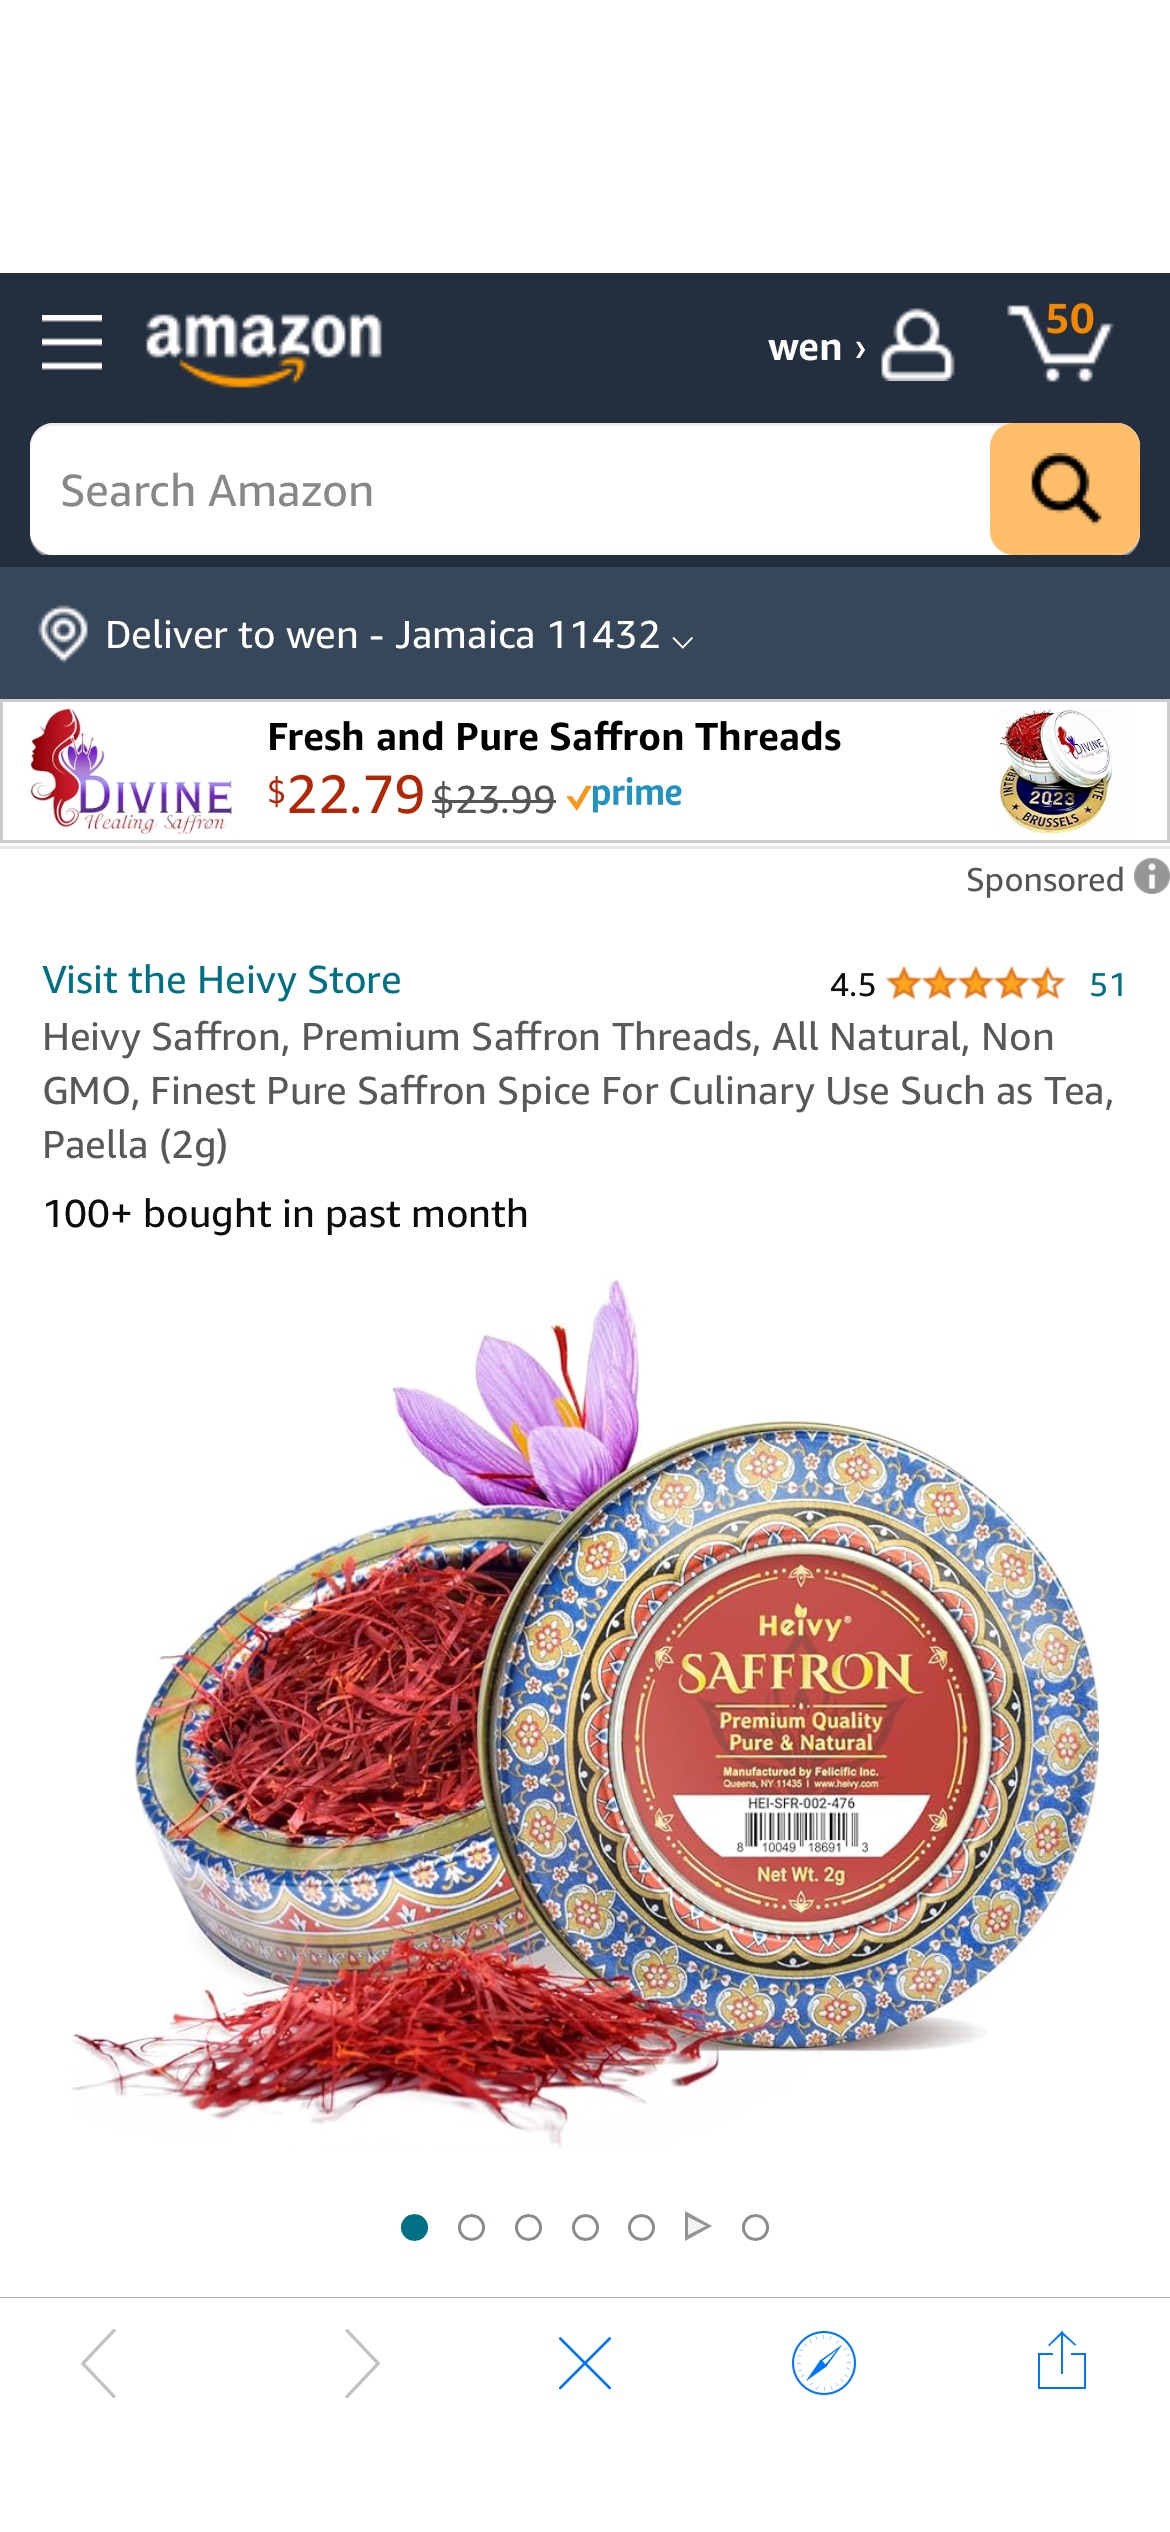 Amazon.com : Heivy Saffron, Premium Saffron Threads, All Natural, Non GMO, Finest Pure Saffron Spice For Culinary Use Such as Tea, Paella (2g) : Grocery & Gourmet Food